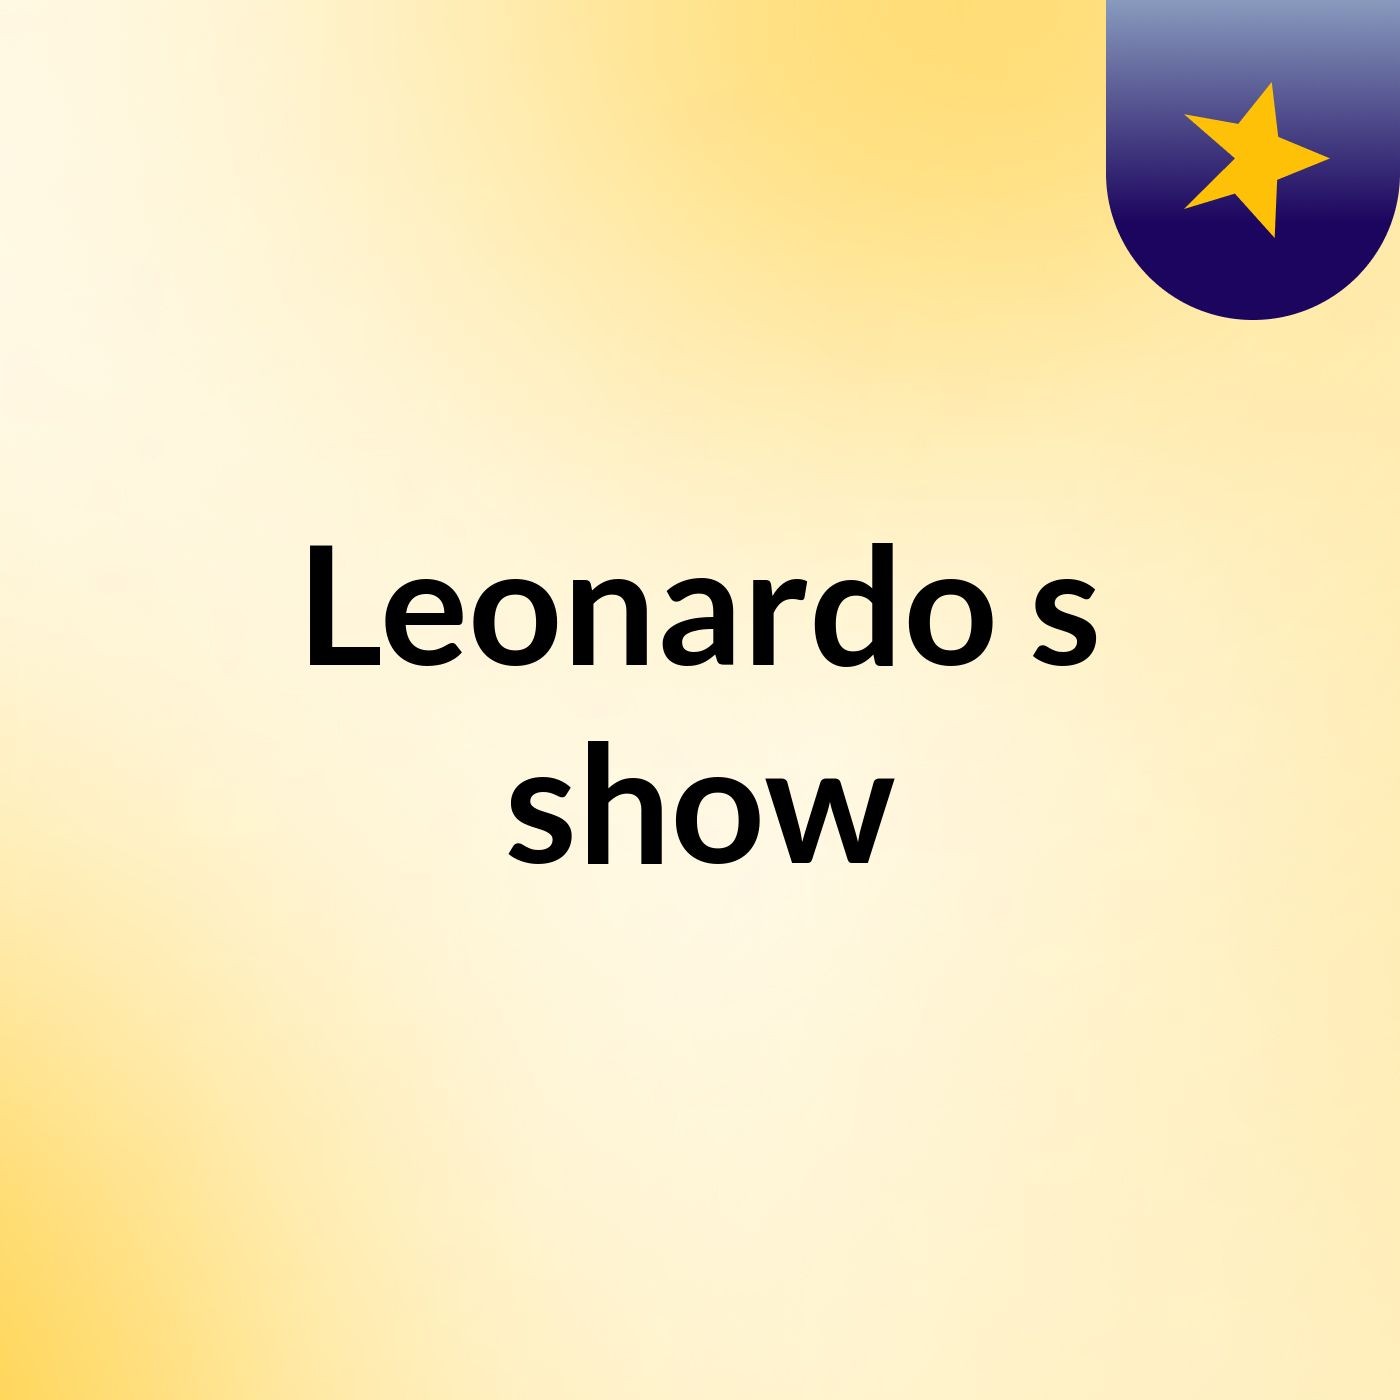 Leonardo's show